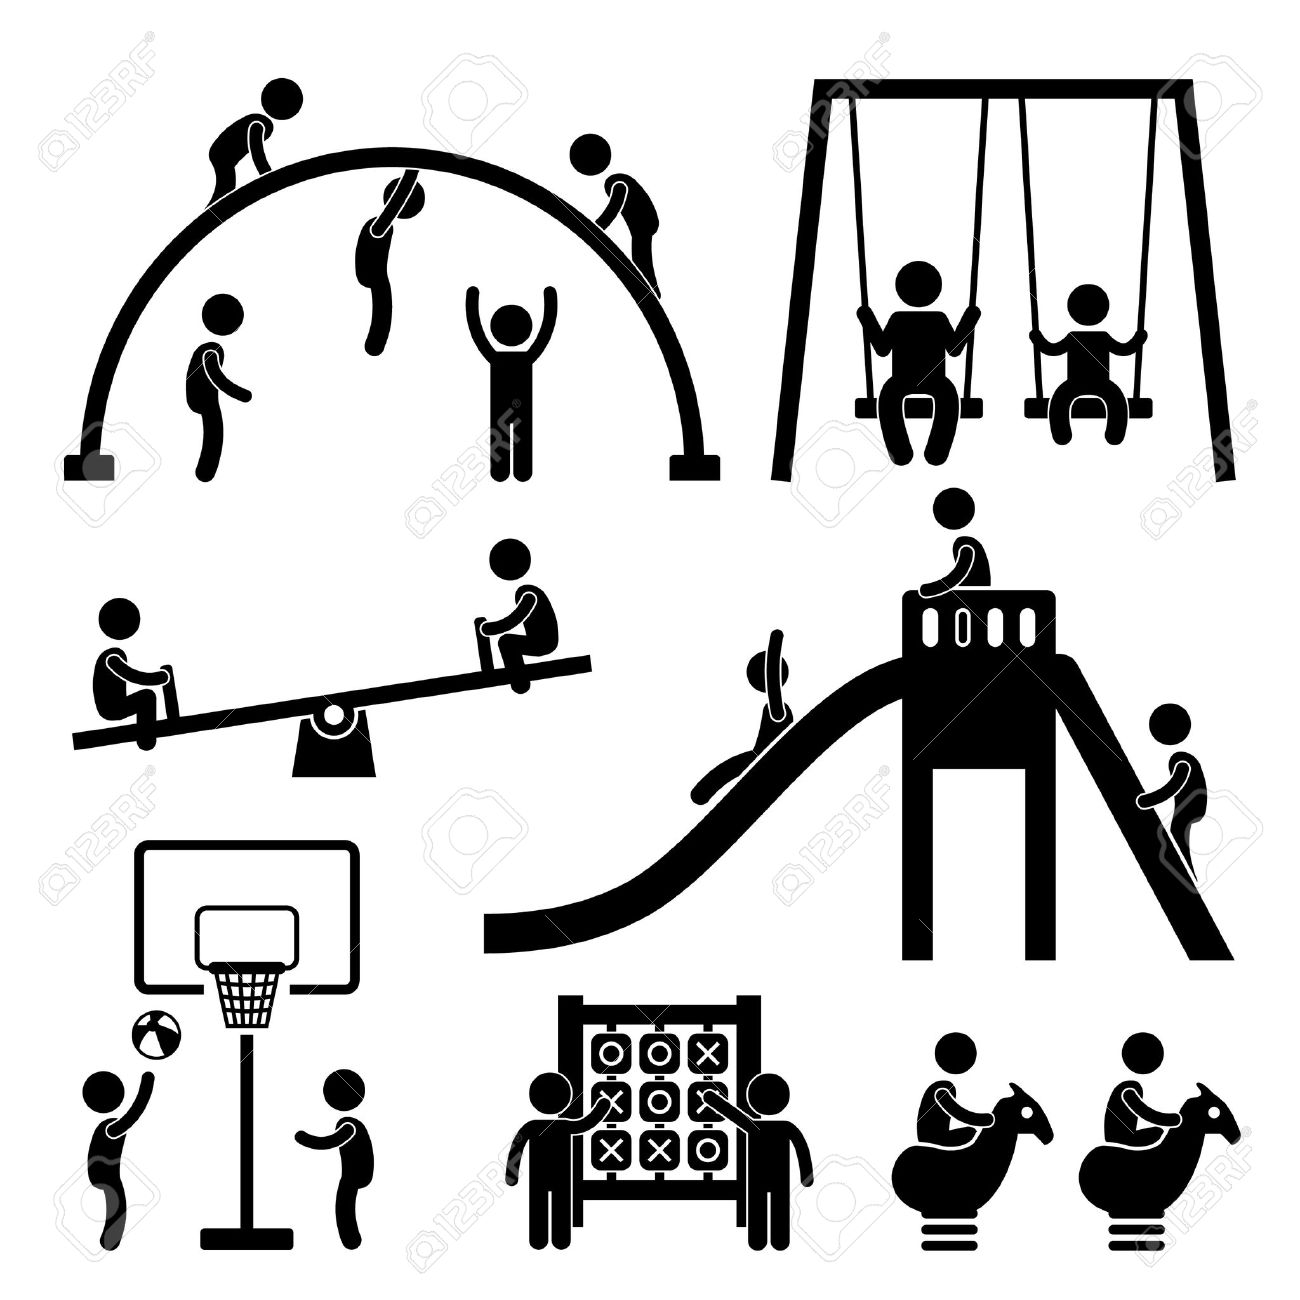 18812200-enfants-jouant-au-parc-aire-de-jeux-ext%C3%A9rieure-ic%C3%B4ne-stick-figure-pictogramme.jpg